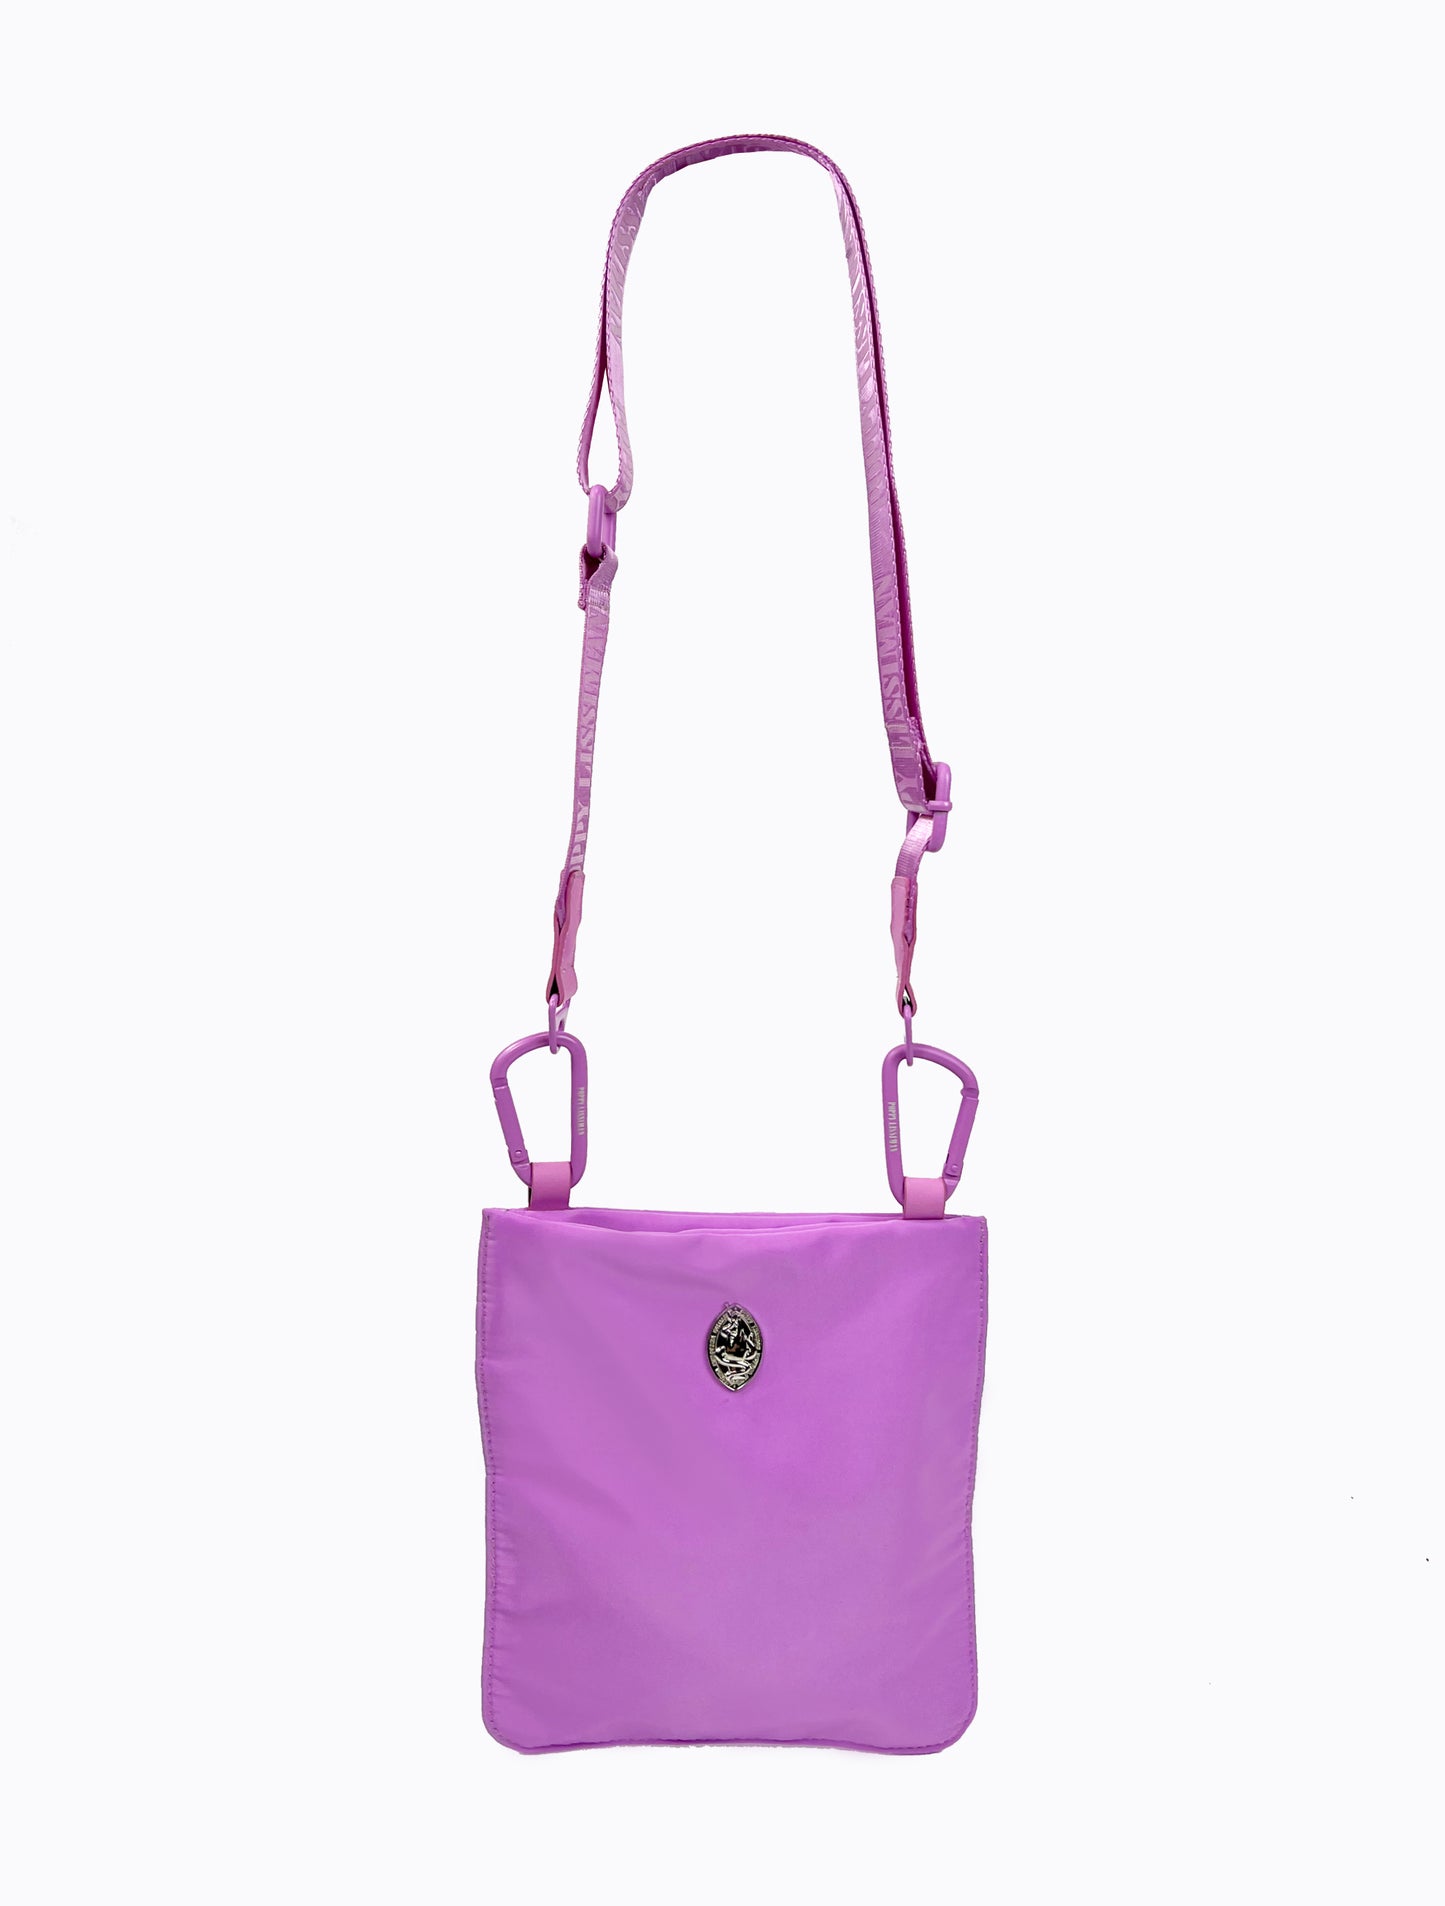 Jacques Shoulder Bag - Neon Lilac